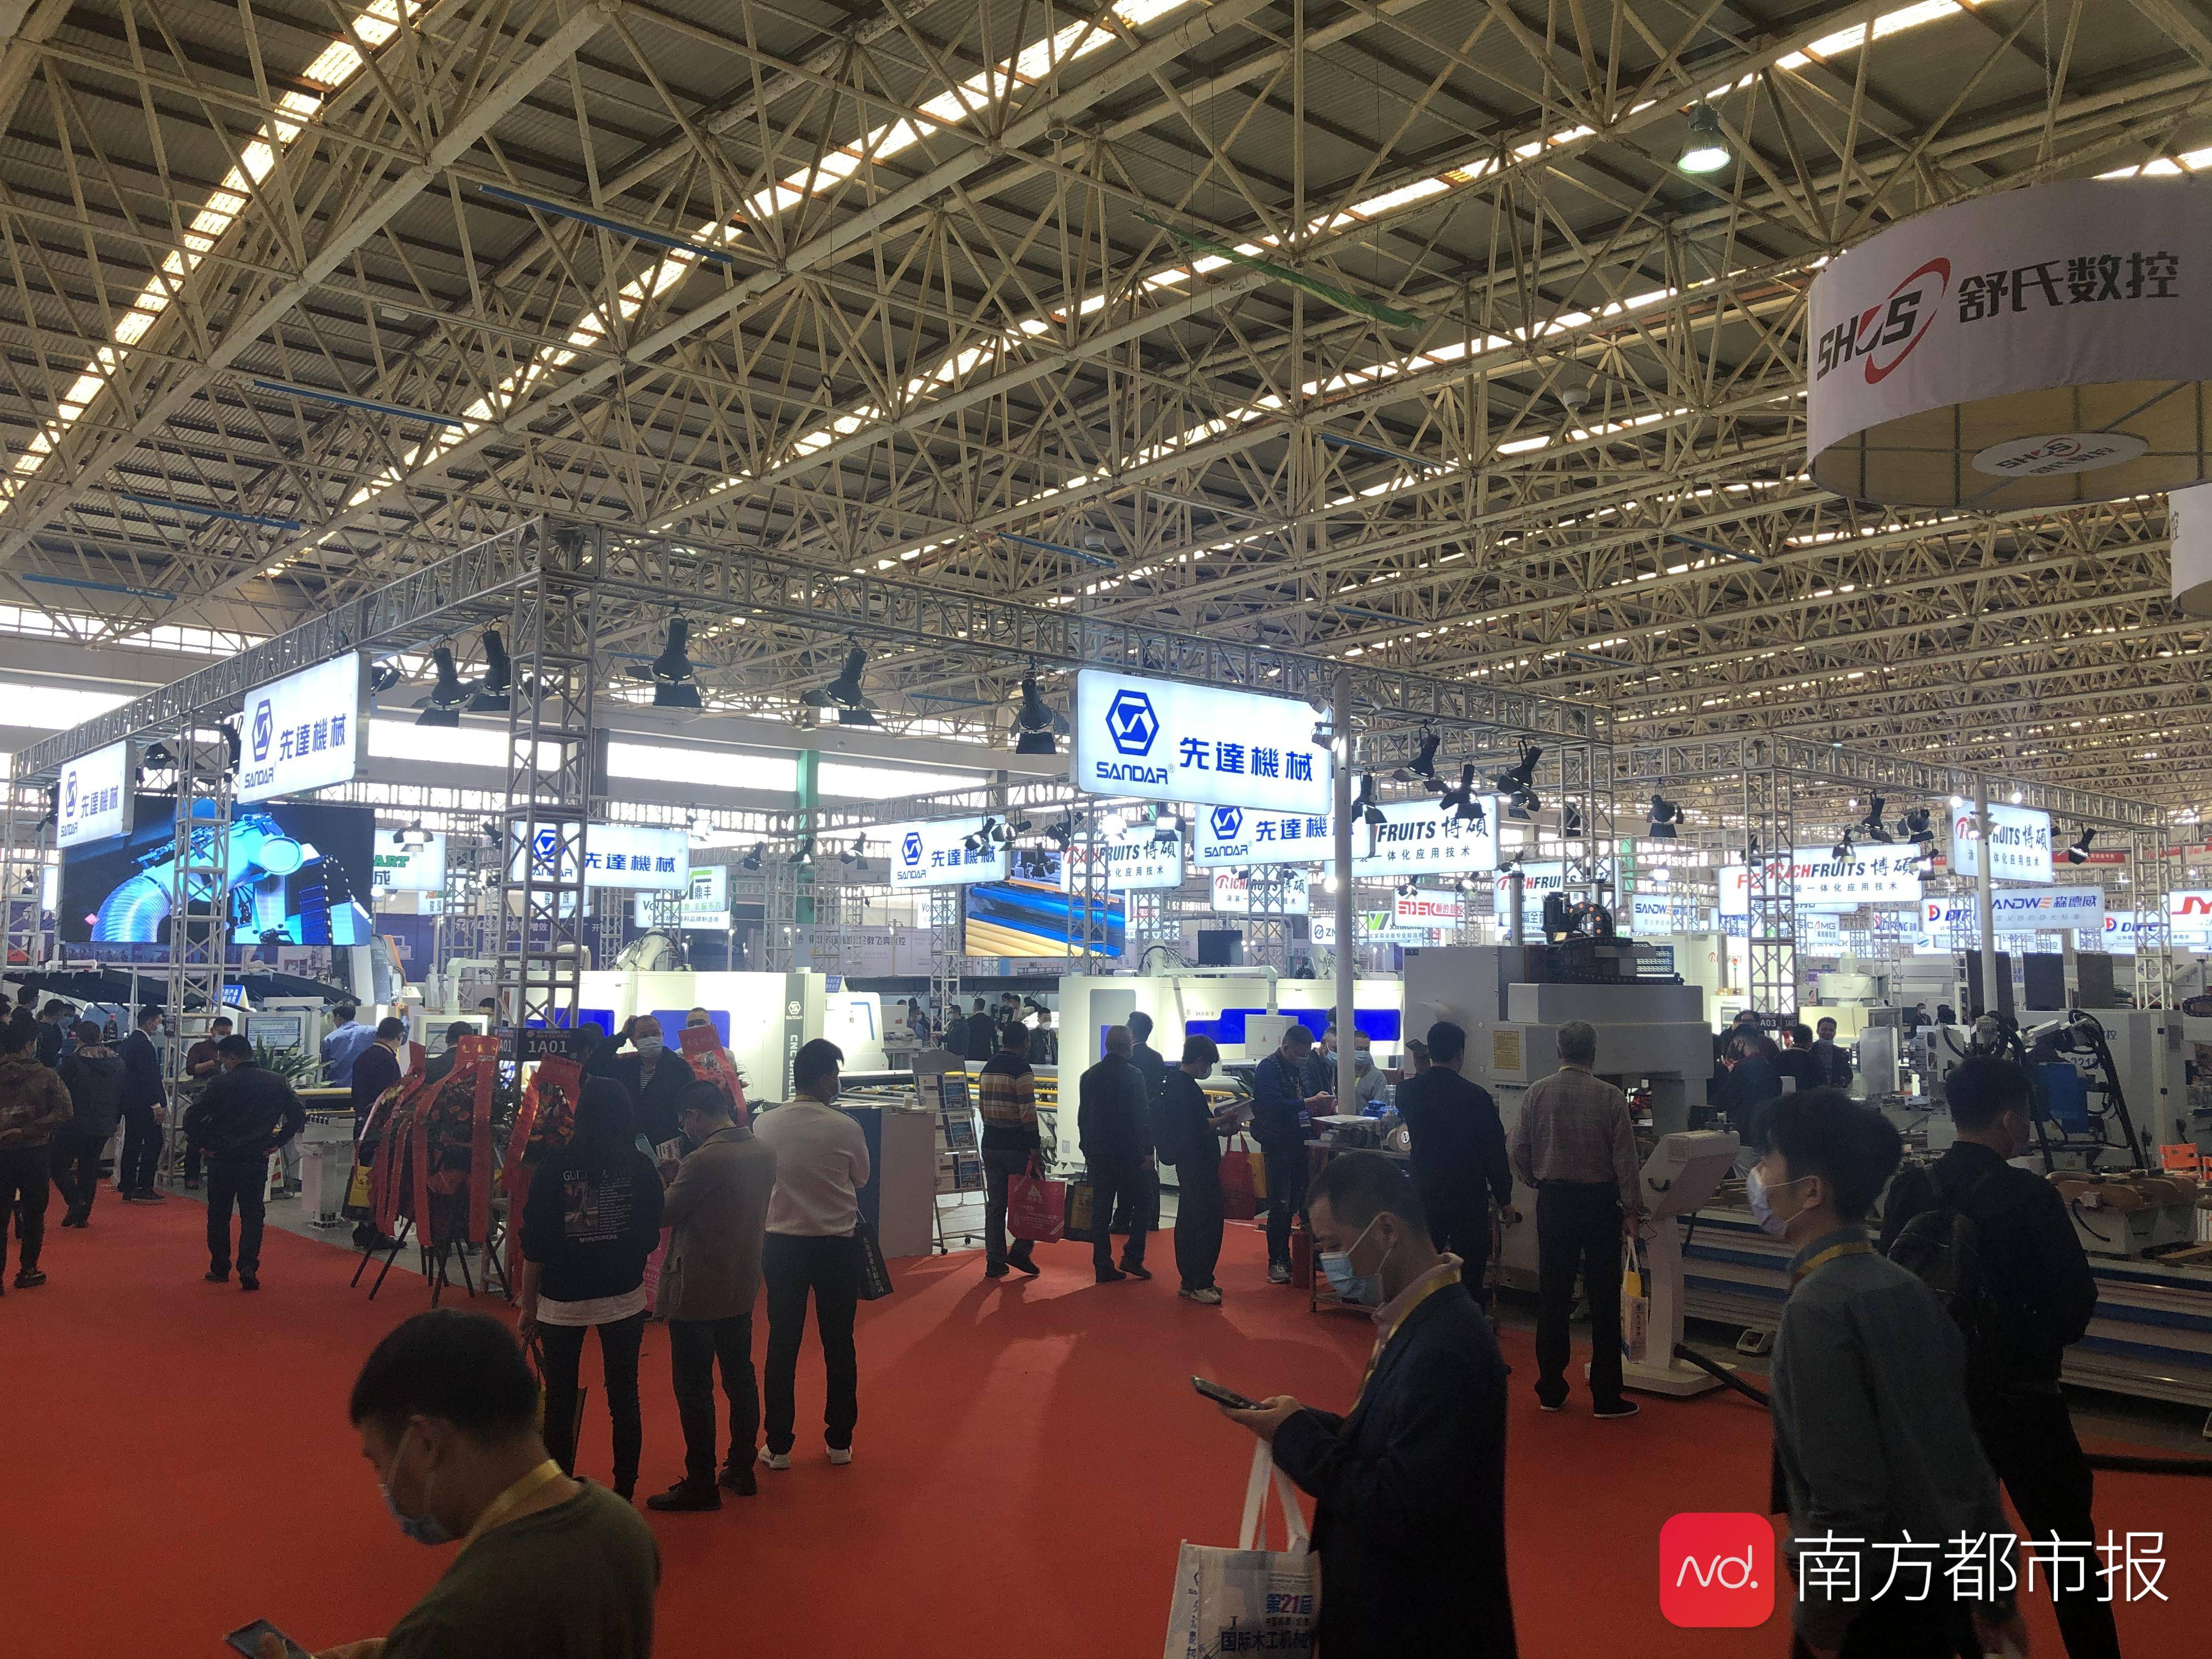 亚美体育官方APP下载400多家企业参展第21届国际木工机械博览会今日开幕